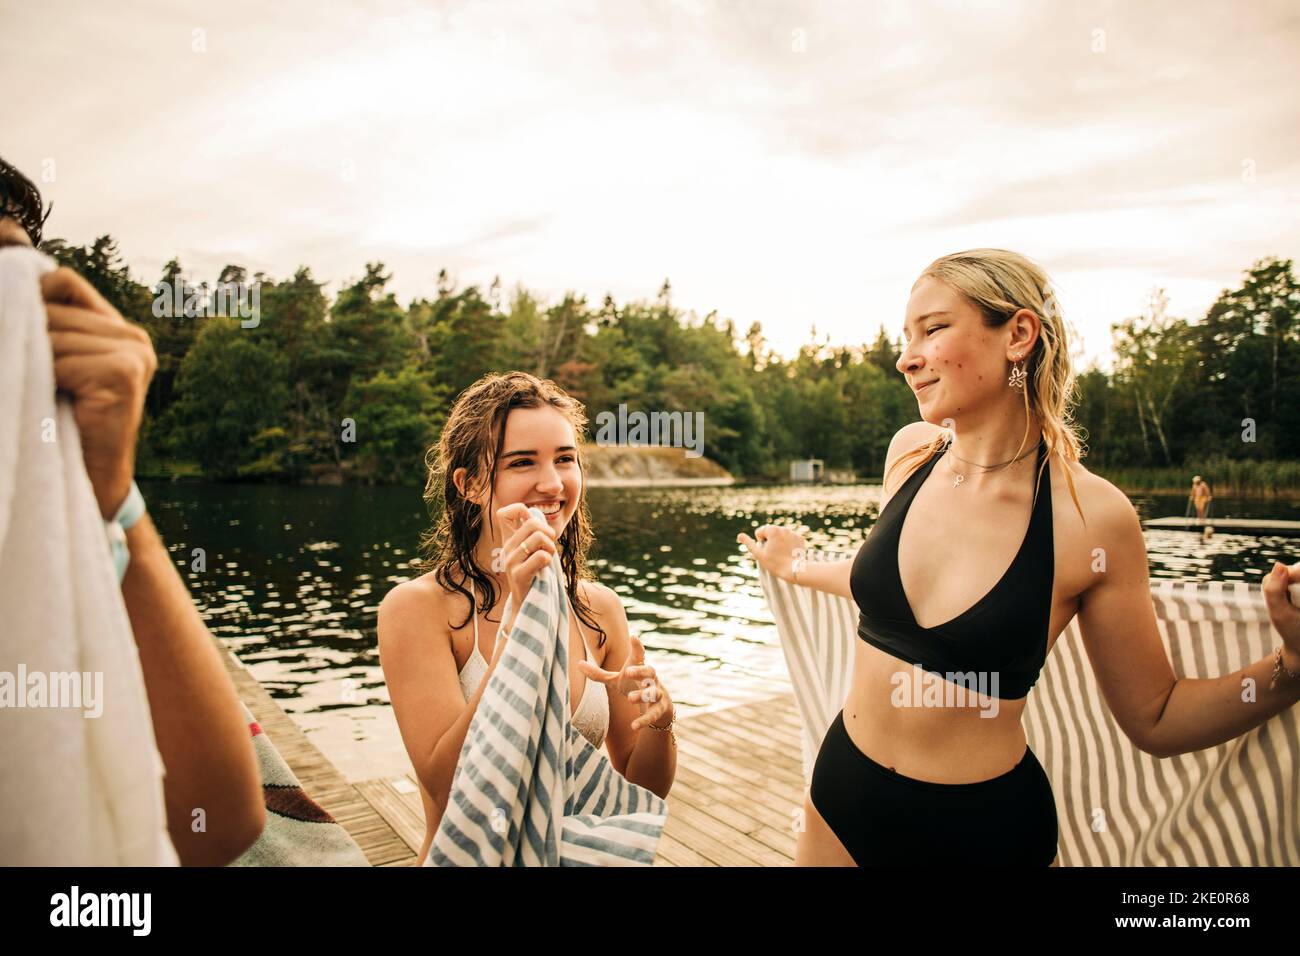 Les femmes avec une serviette parlent les unes aux autres au lac pendant les vacances Banque D'Images